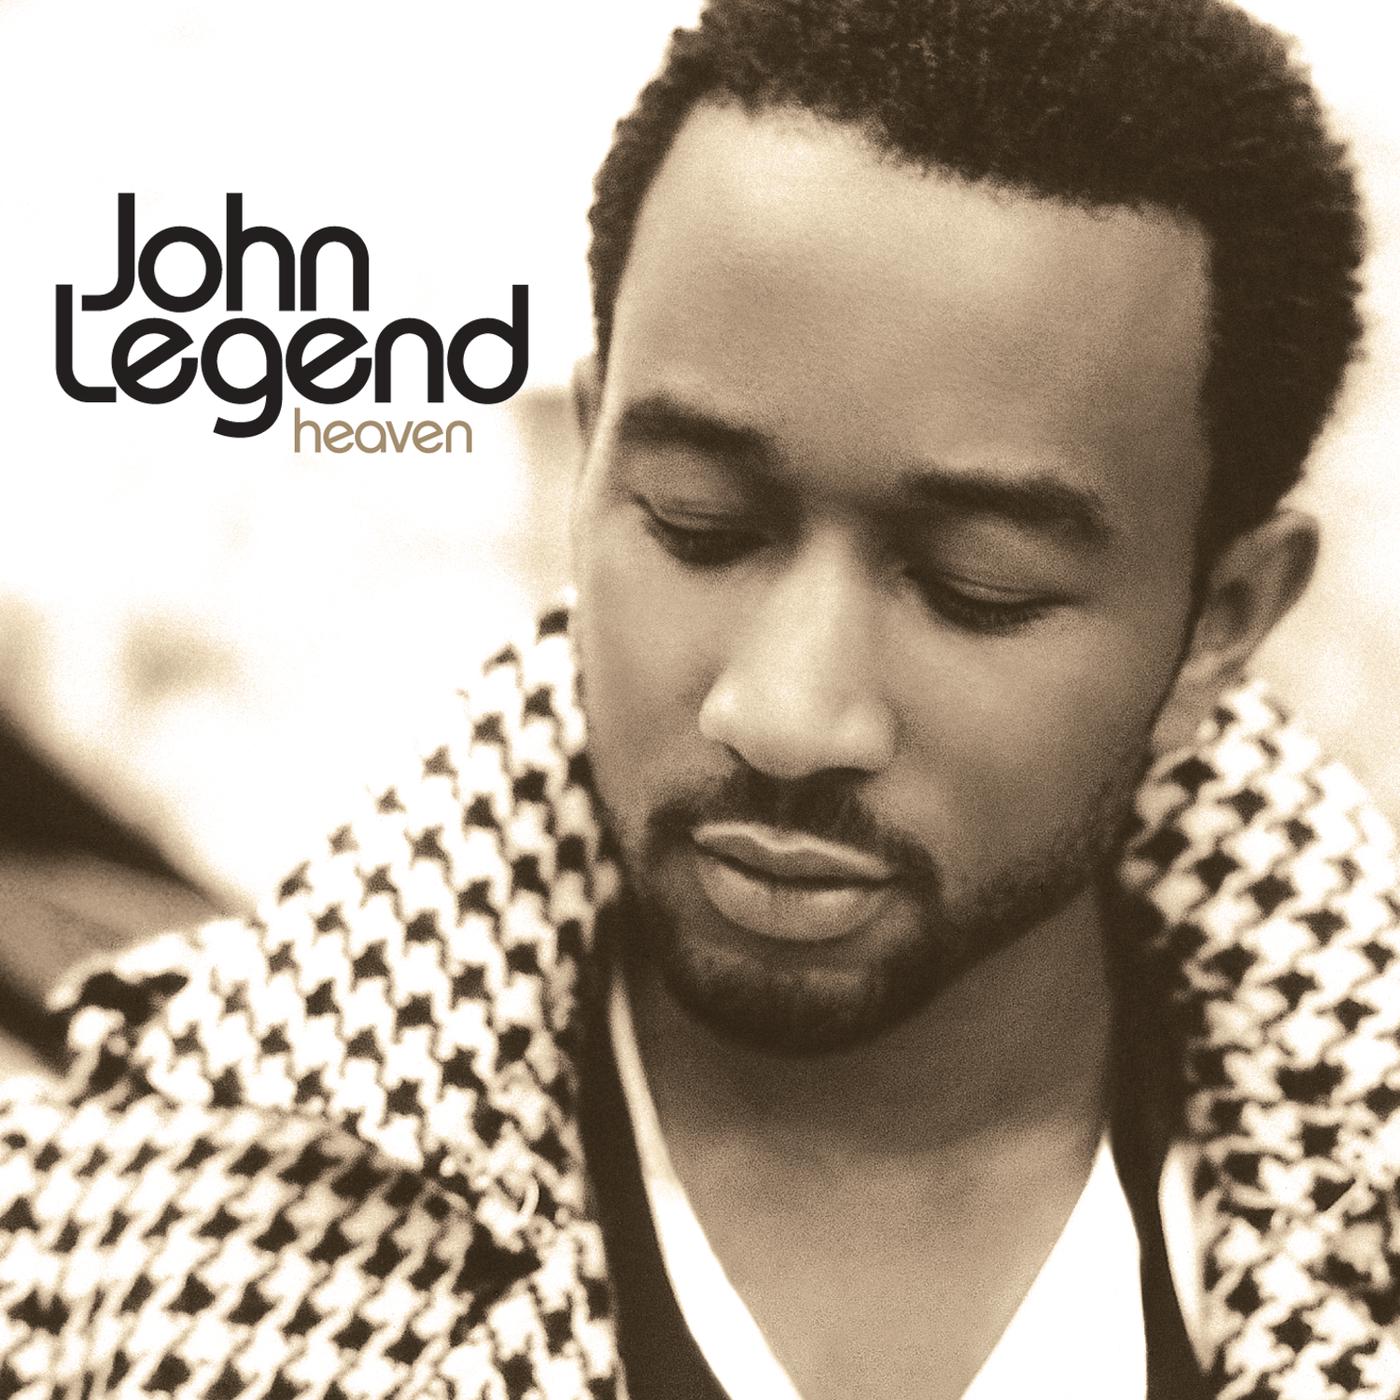 John Legend - Heaven (A Cappella)